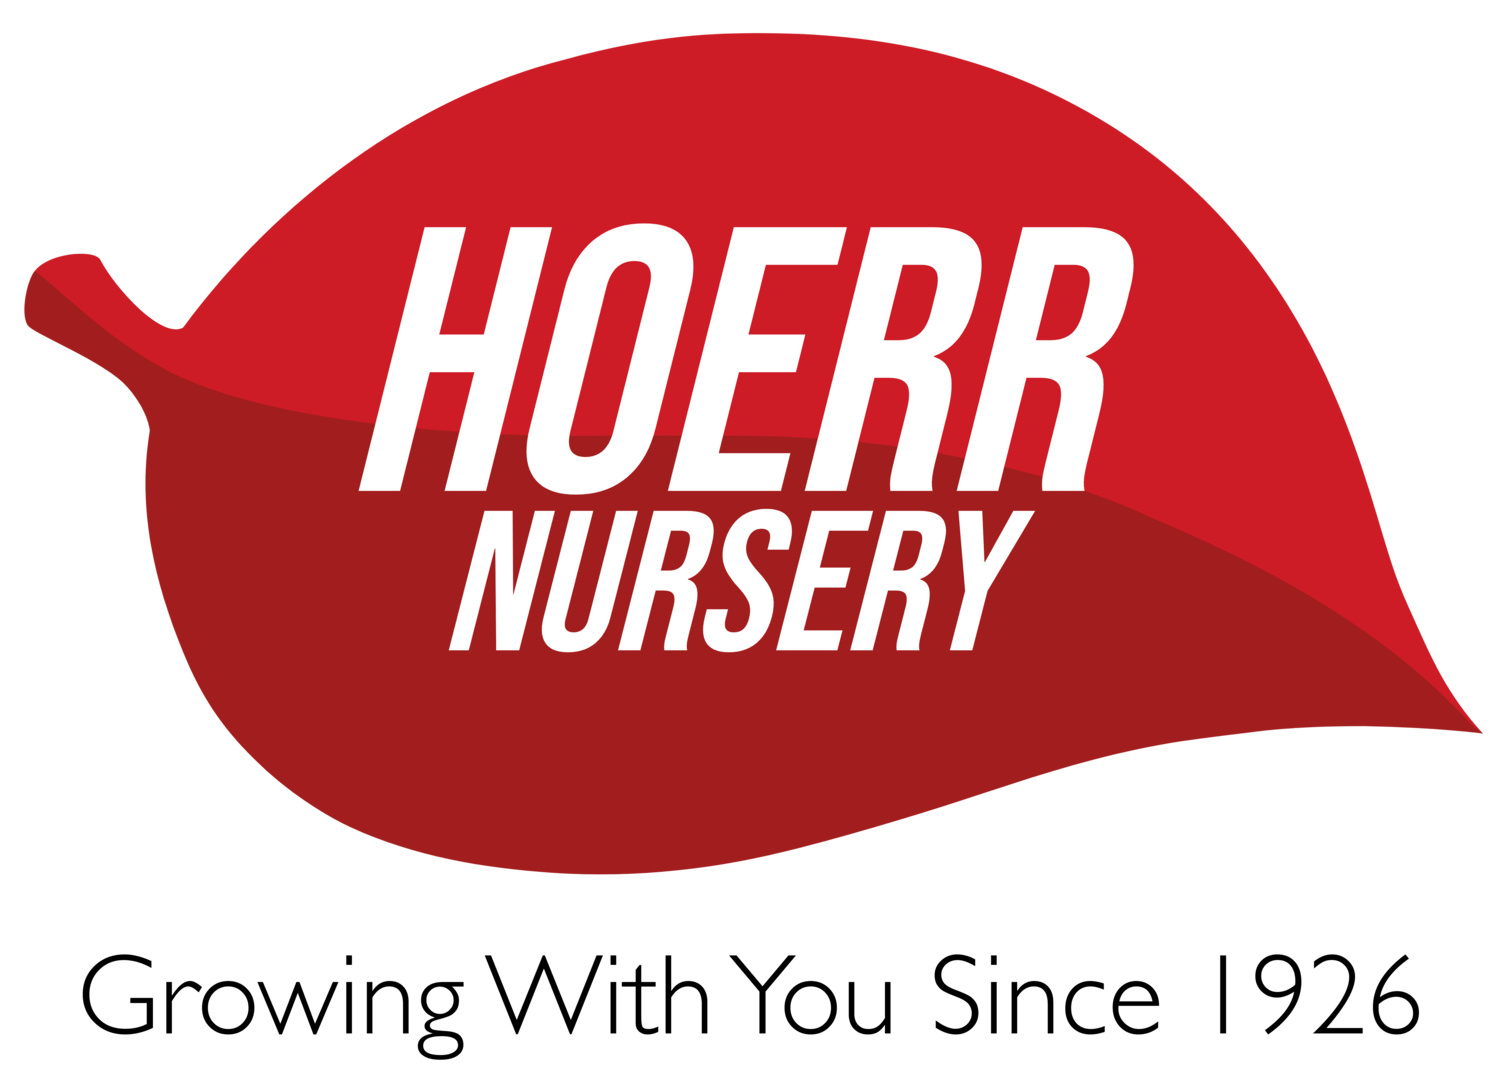 Hoerr Nursery 